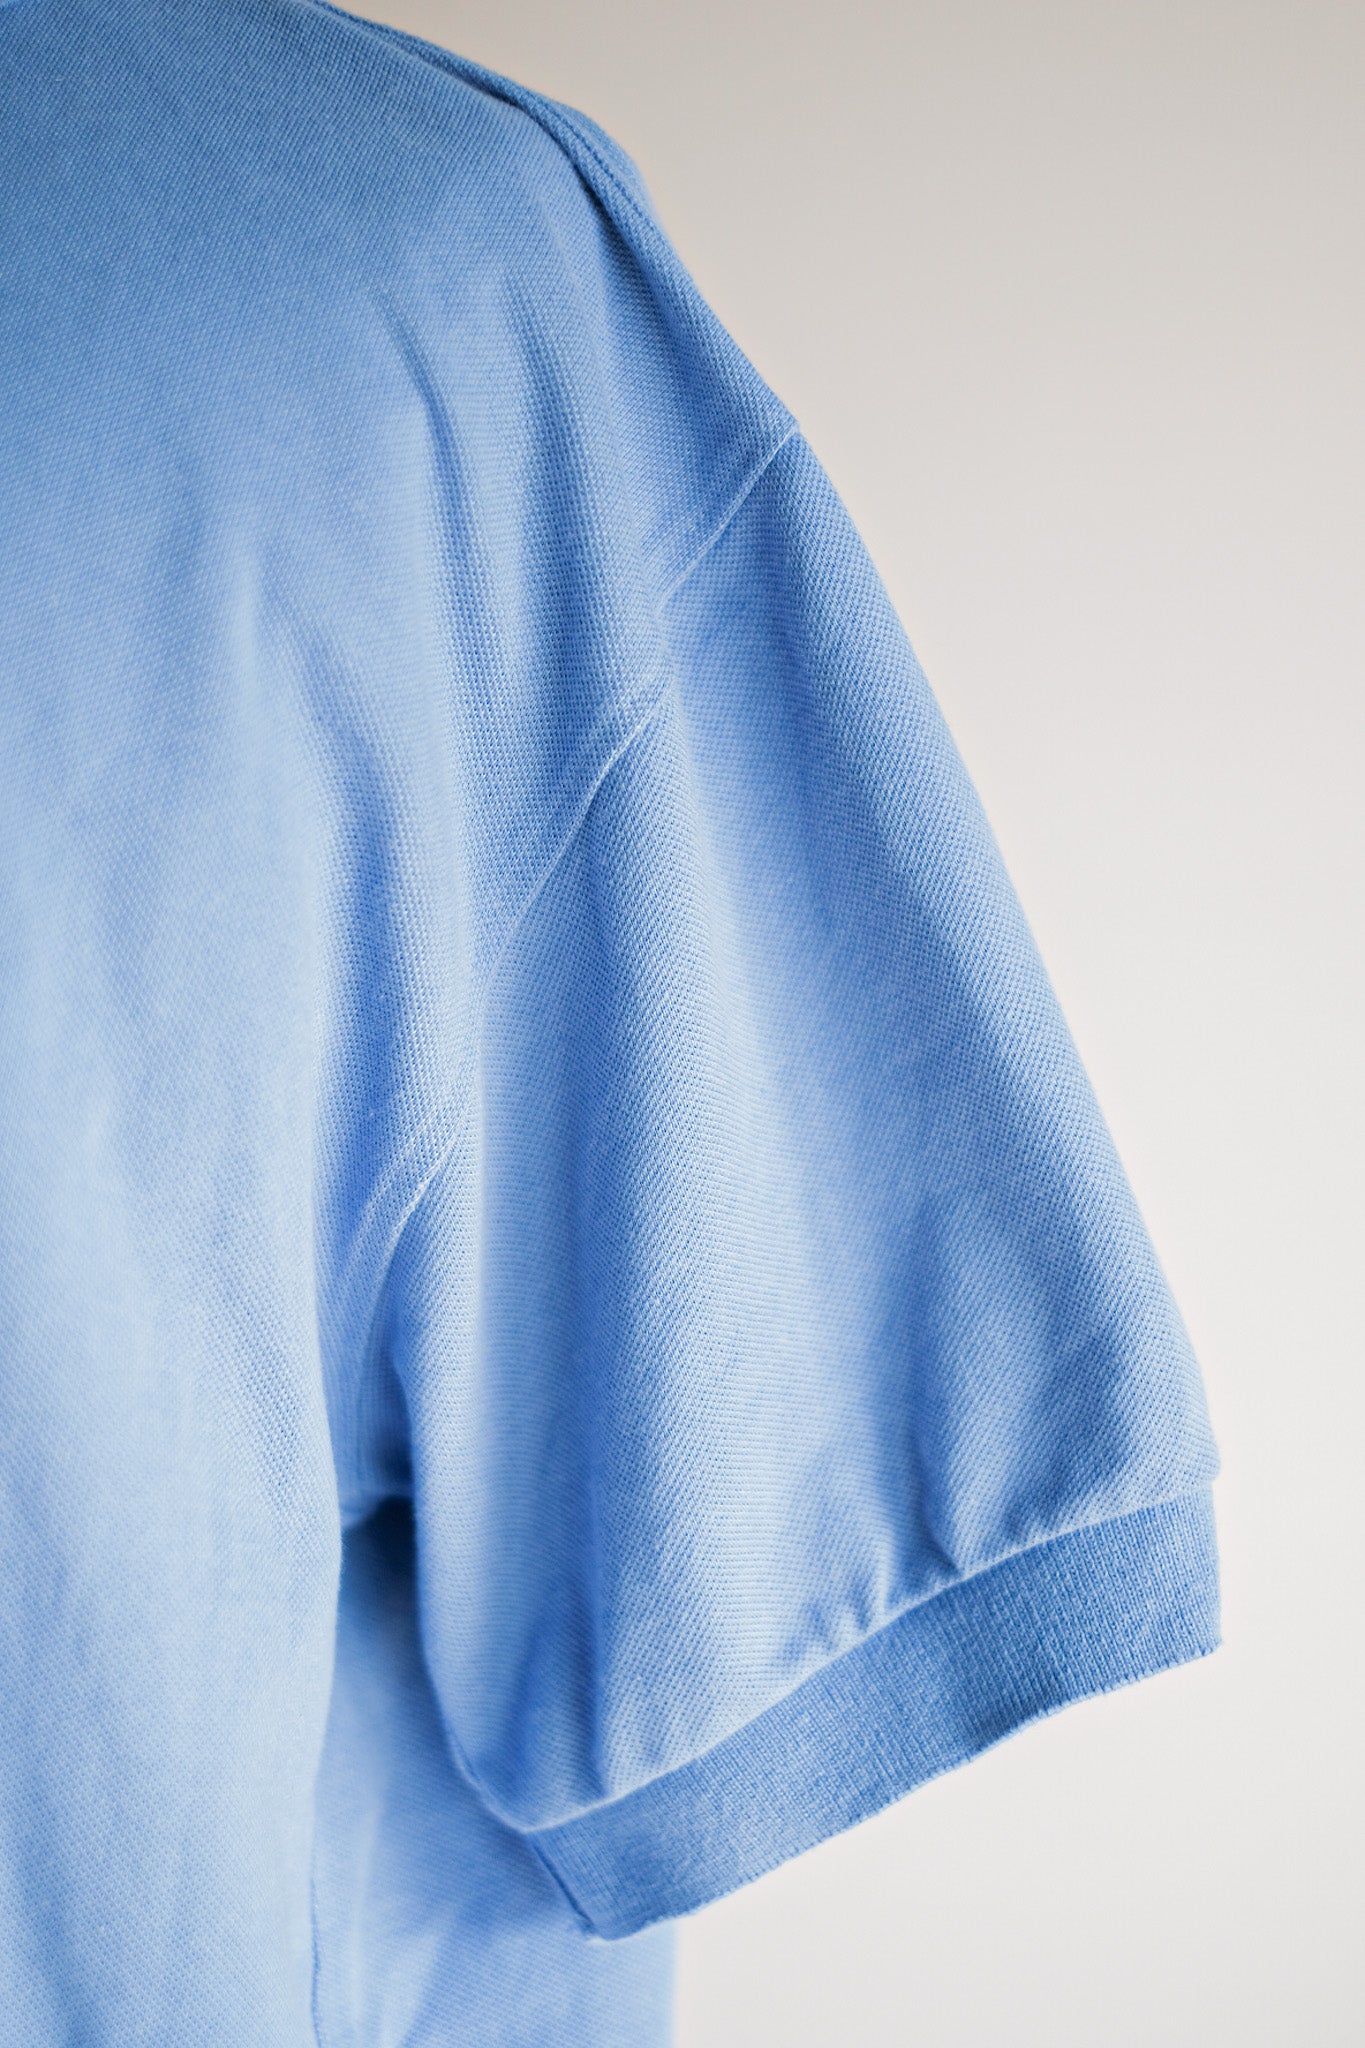 【~90's】CHEMISE LACOSTE S/S Polo Shirt Size.7 "Light Blue"